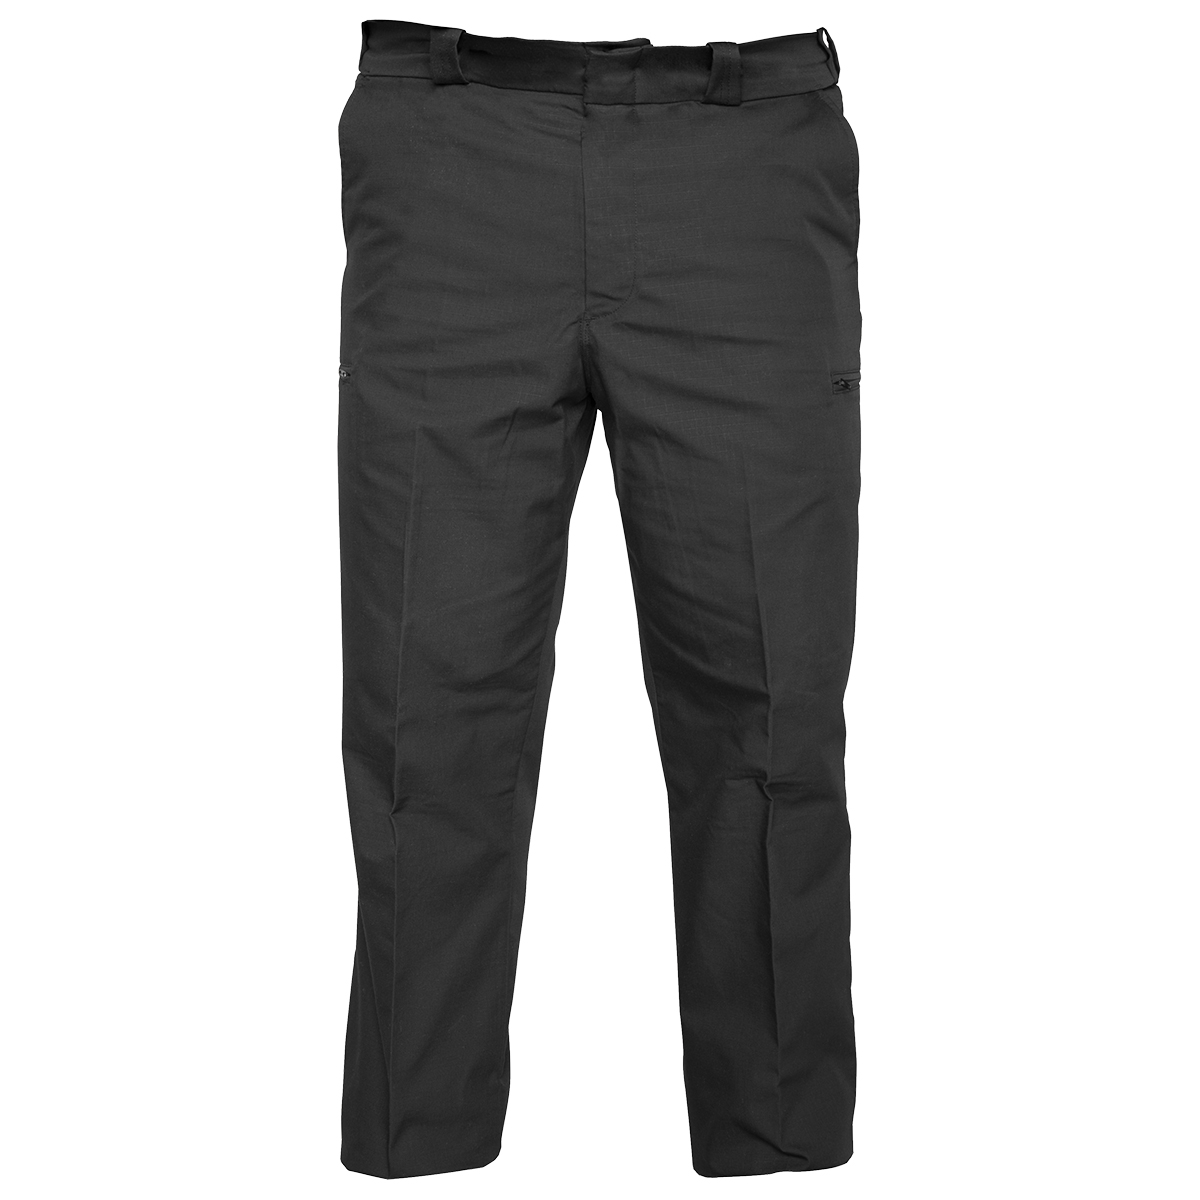 Buy Reflex Hidden Cargo Pants-Mens - Elbeco Online at Best price - VA